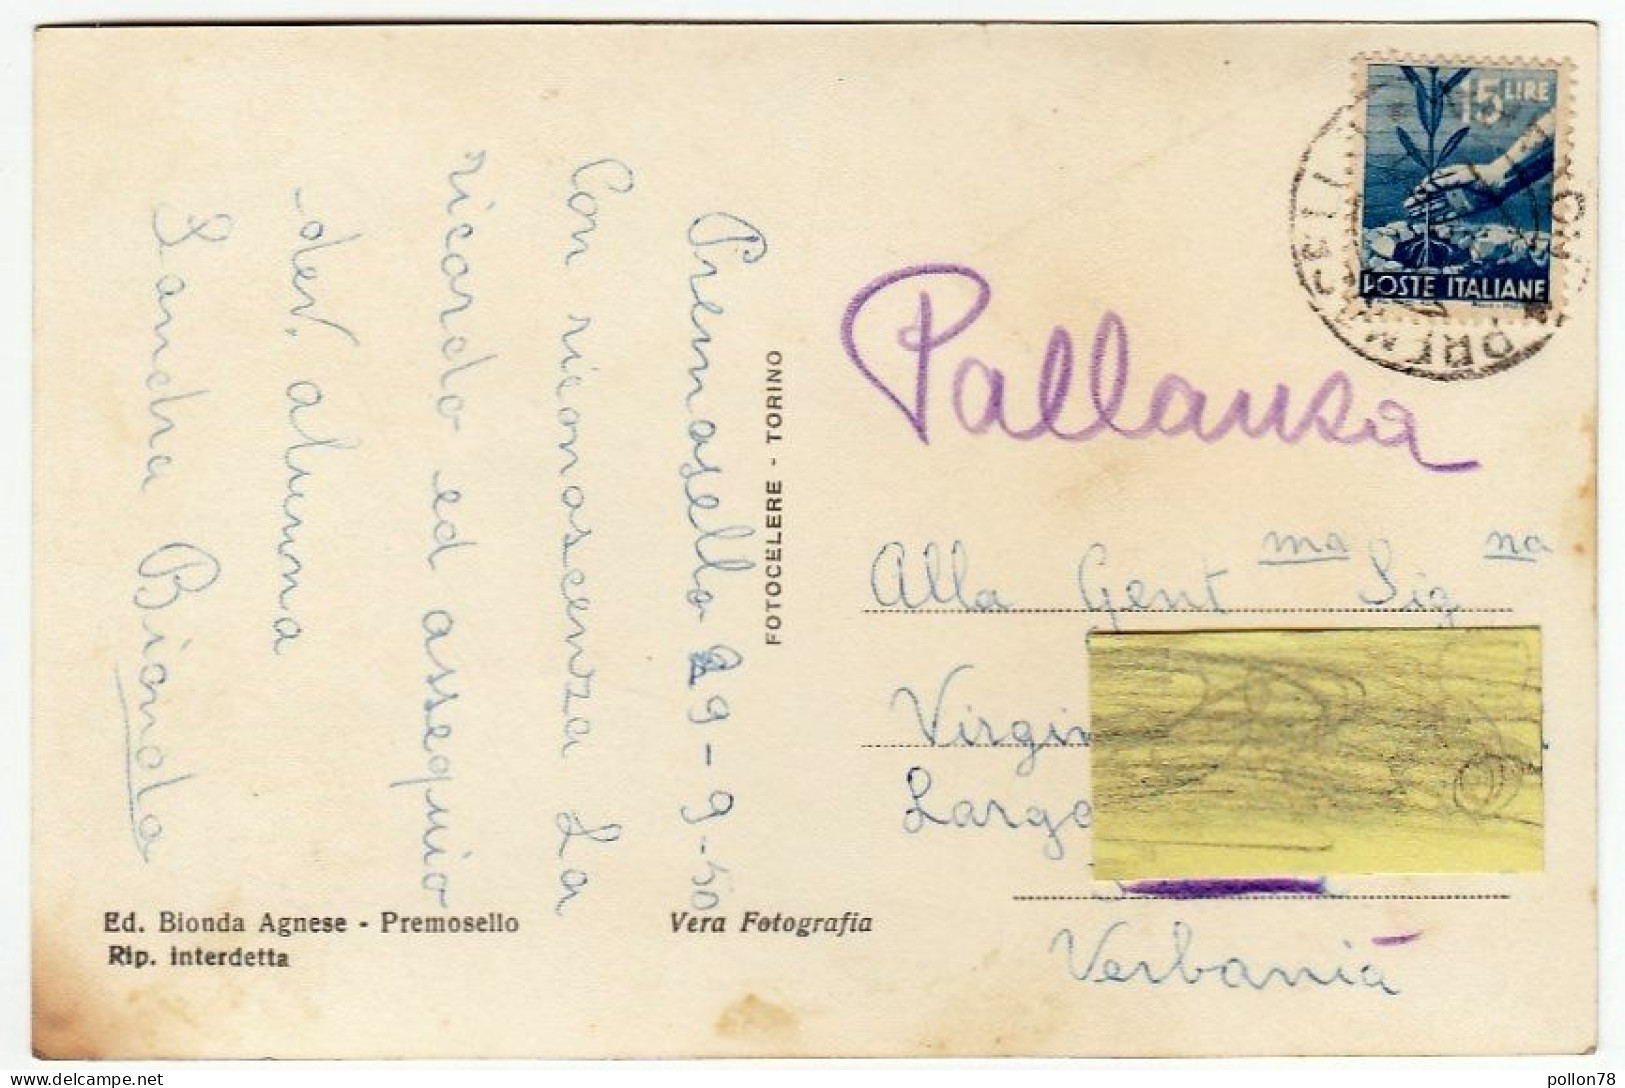 PREMOSELLO - CHIOVENDA - PANORAMA - VERBANIA -1950 - Vedi Retro - Formato Piccolo - Verbania